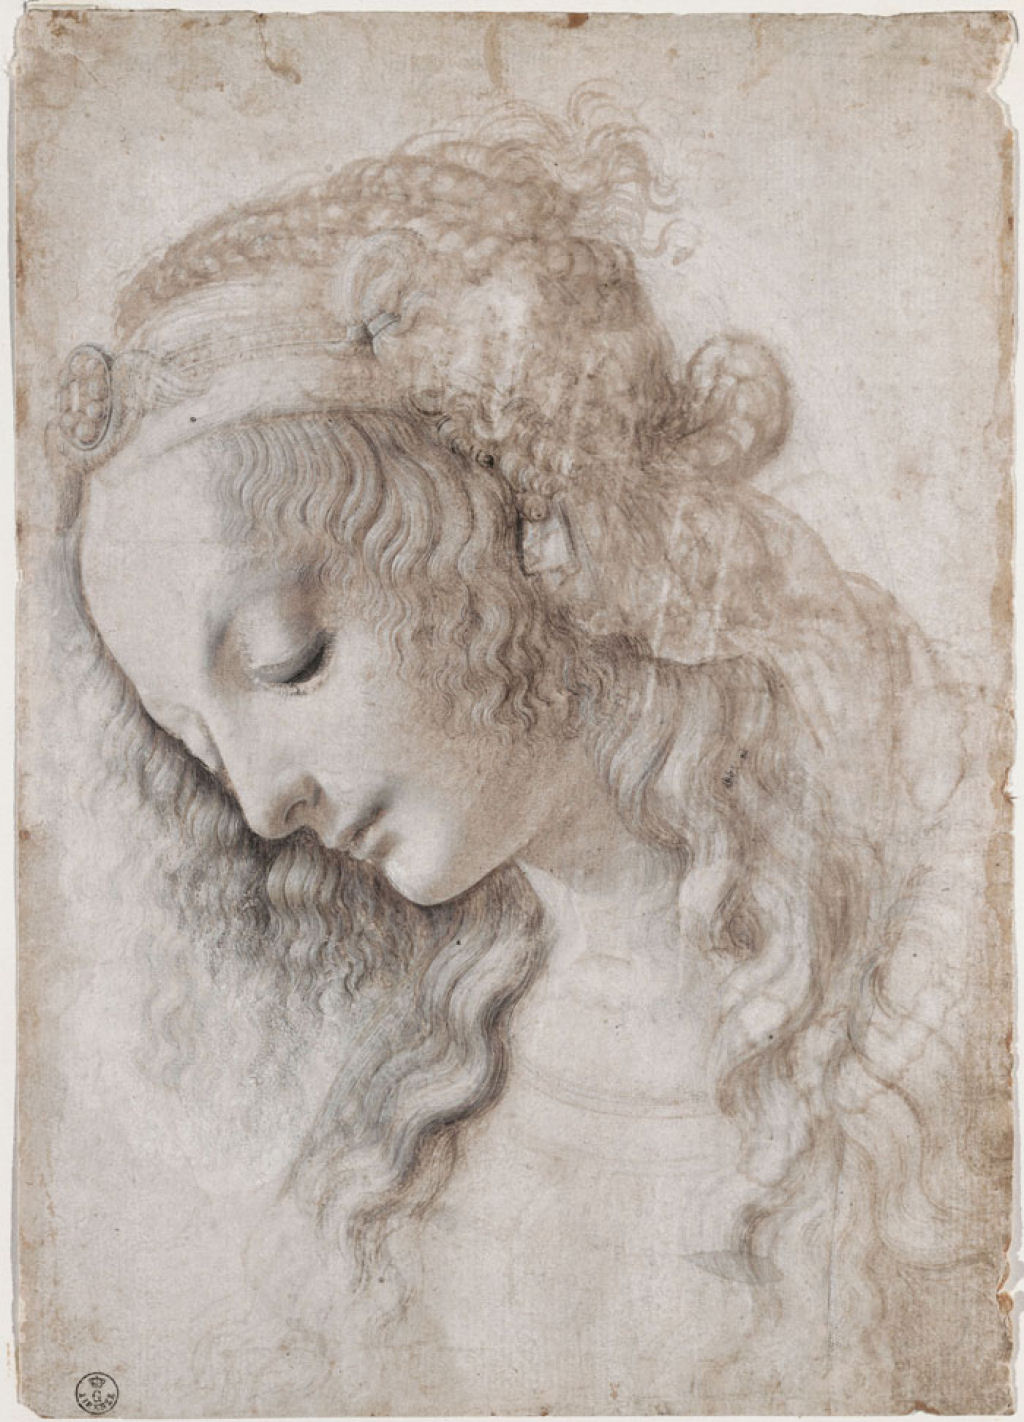 A beleza e simplicidade íntima das figuras femininas desenhadas por Leonardo da Vinci 08